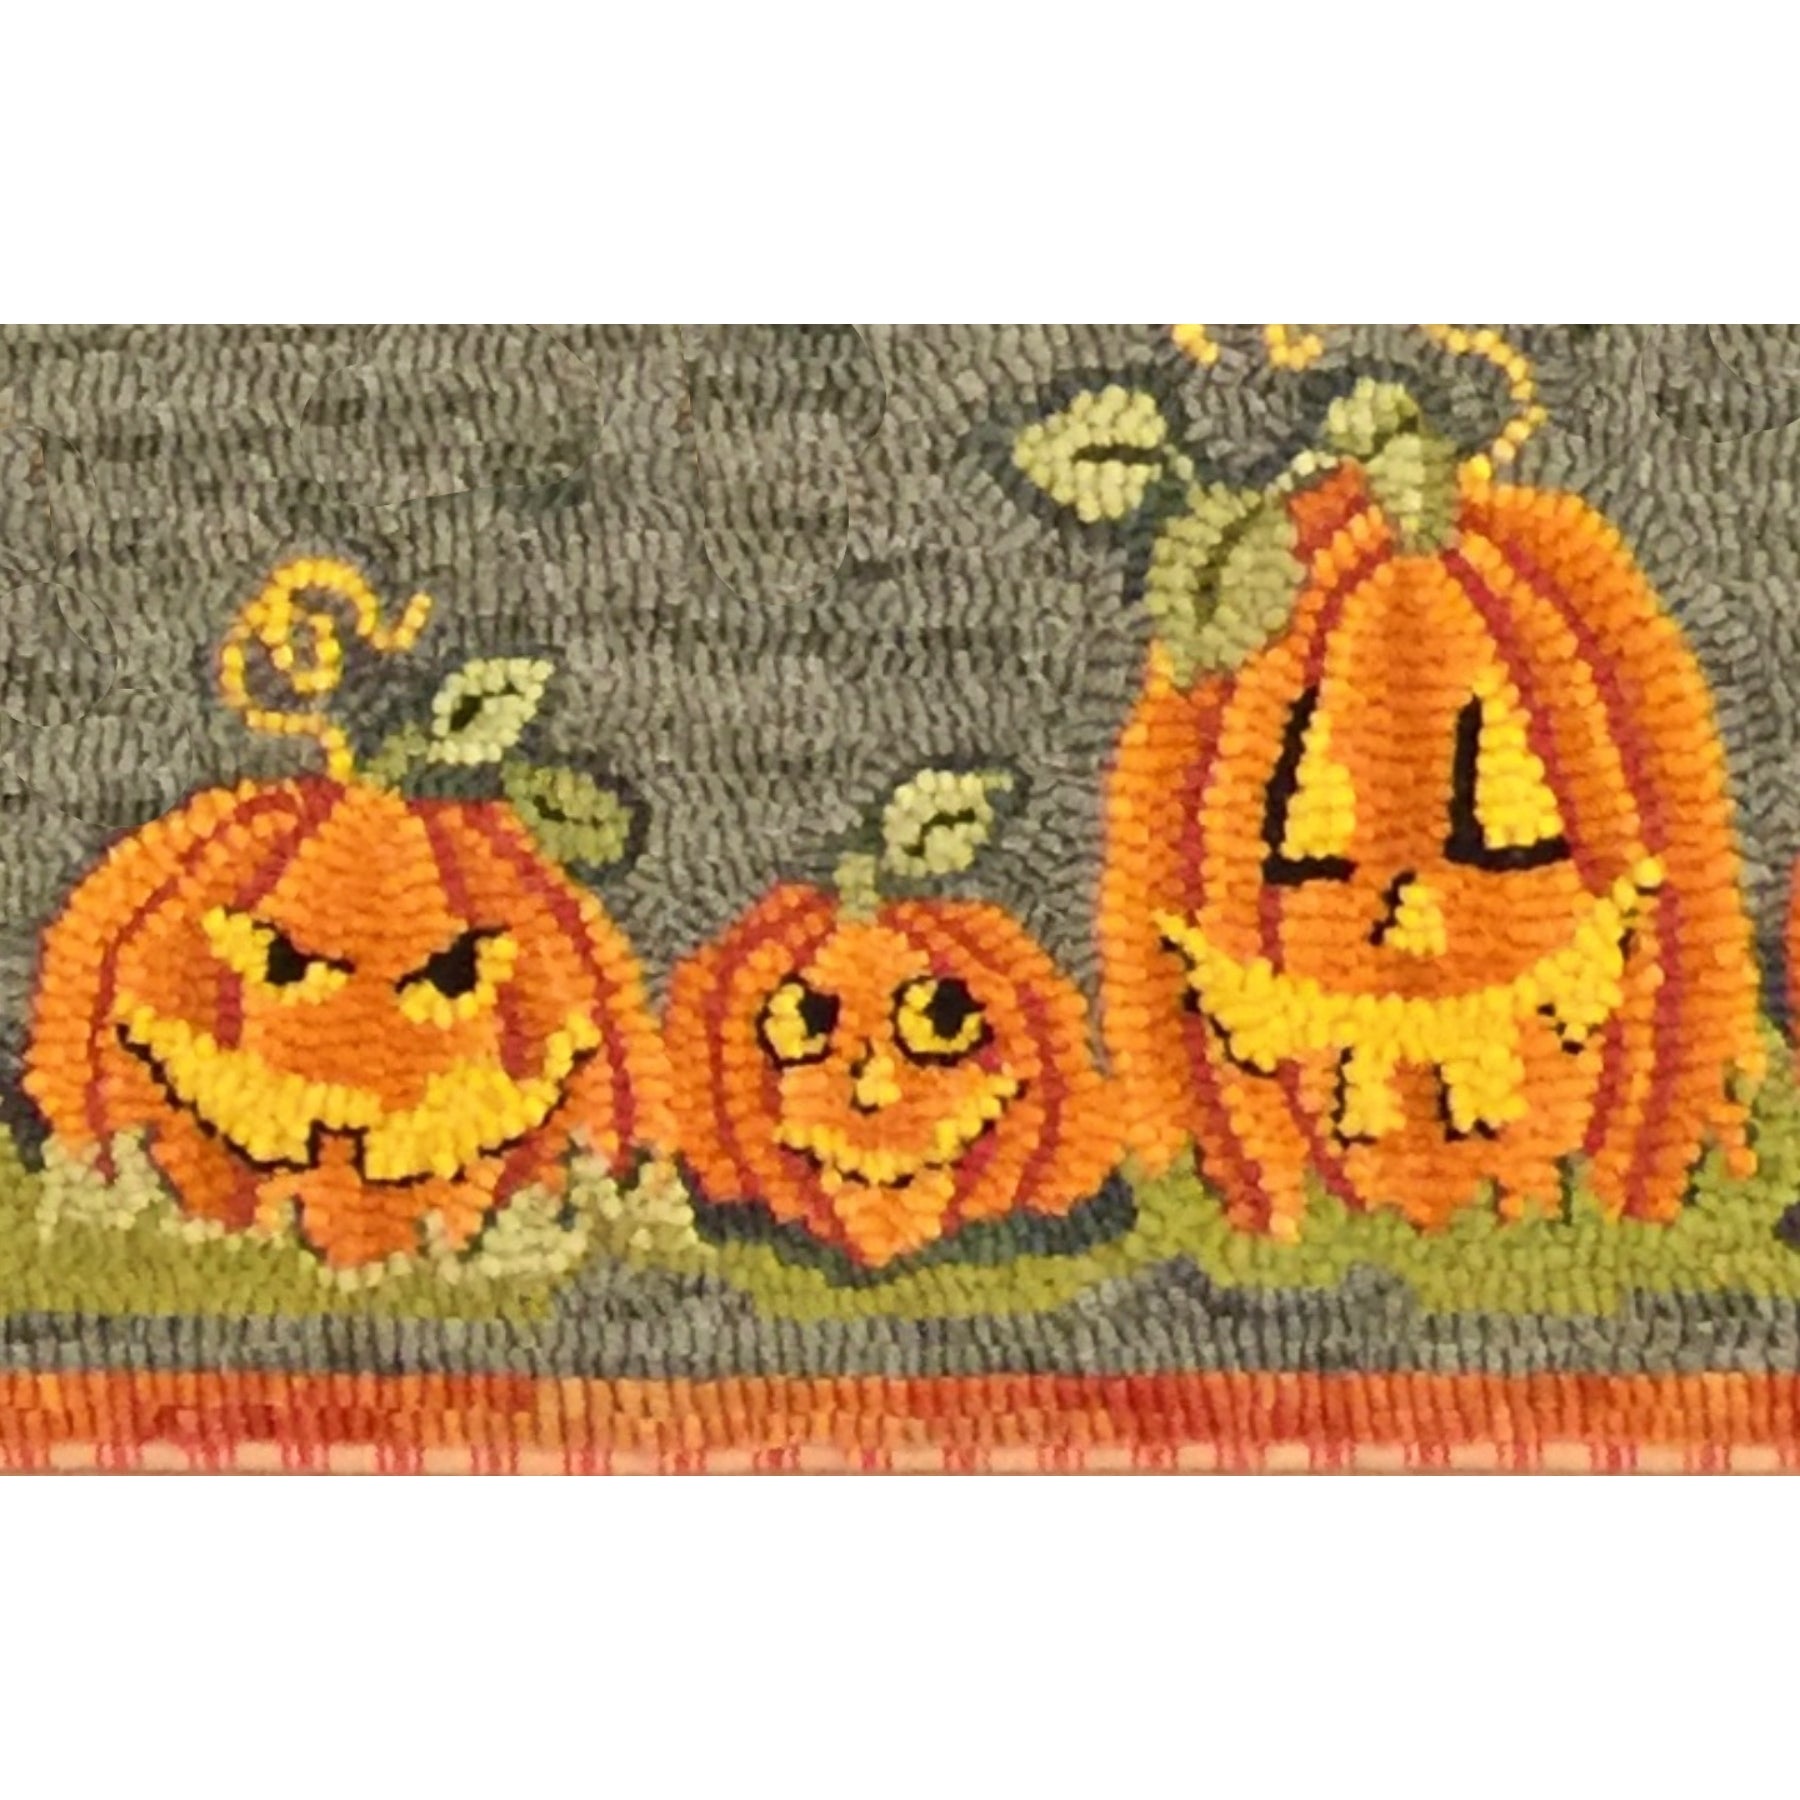 9 Jacks - 3 Pumpkins, rug hooked by Martha Lowry